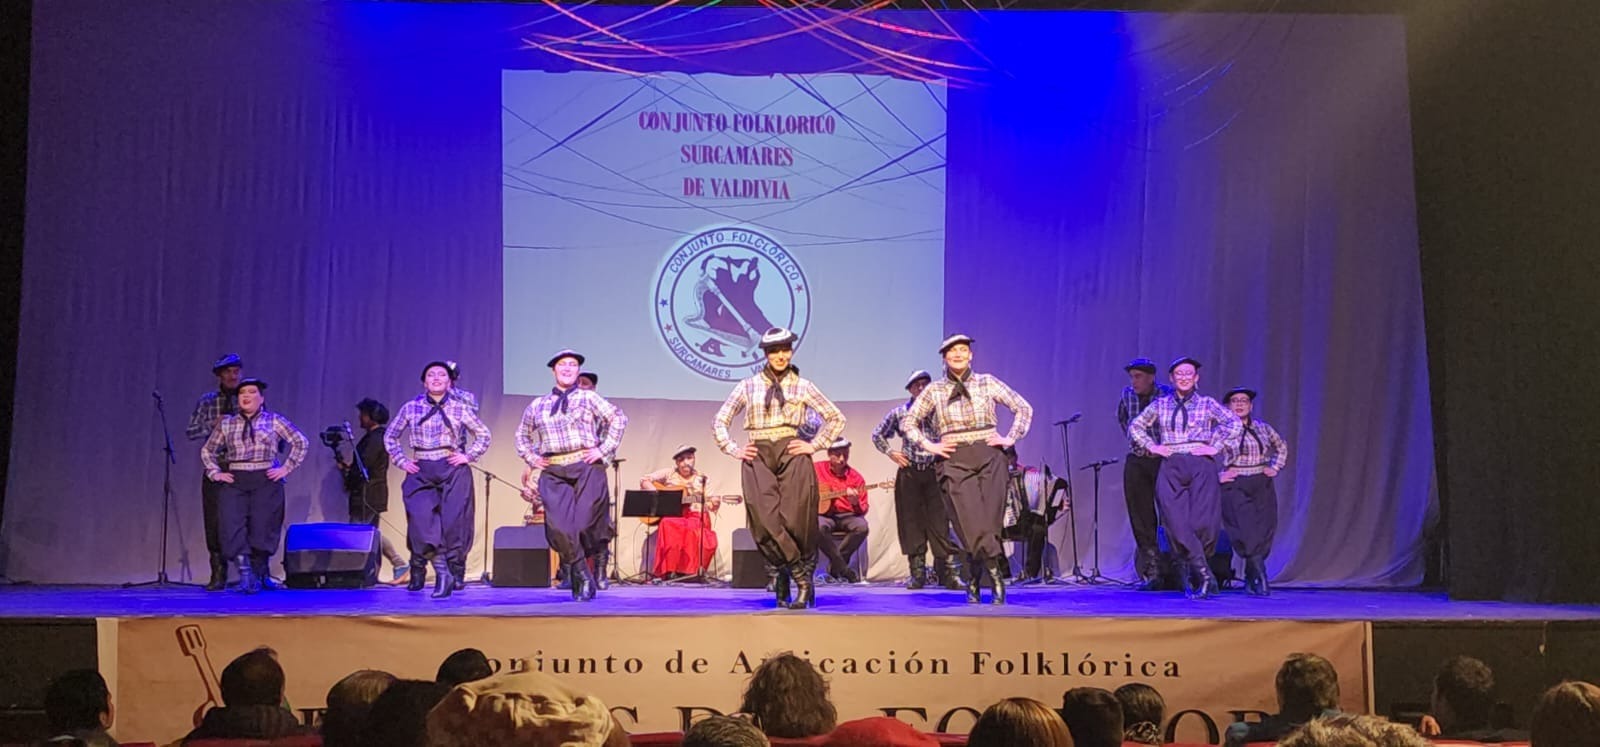 Hito del lanzamiento folclórico regional se efectuará en el Teatro Regional Cervantes de Valdivia